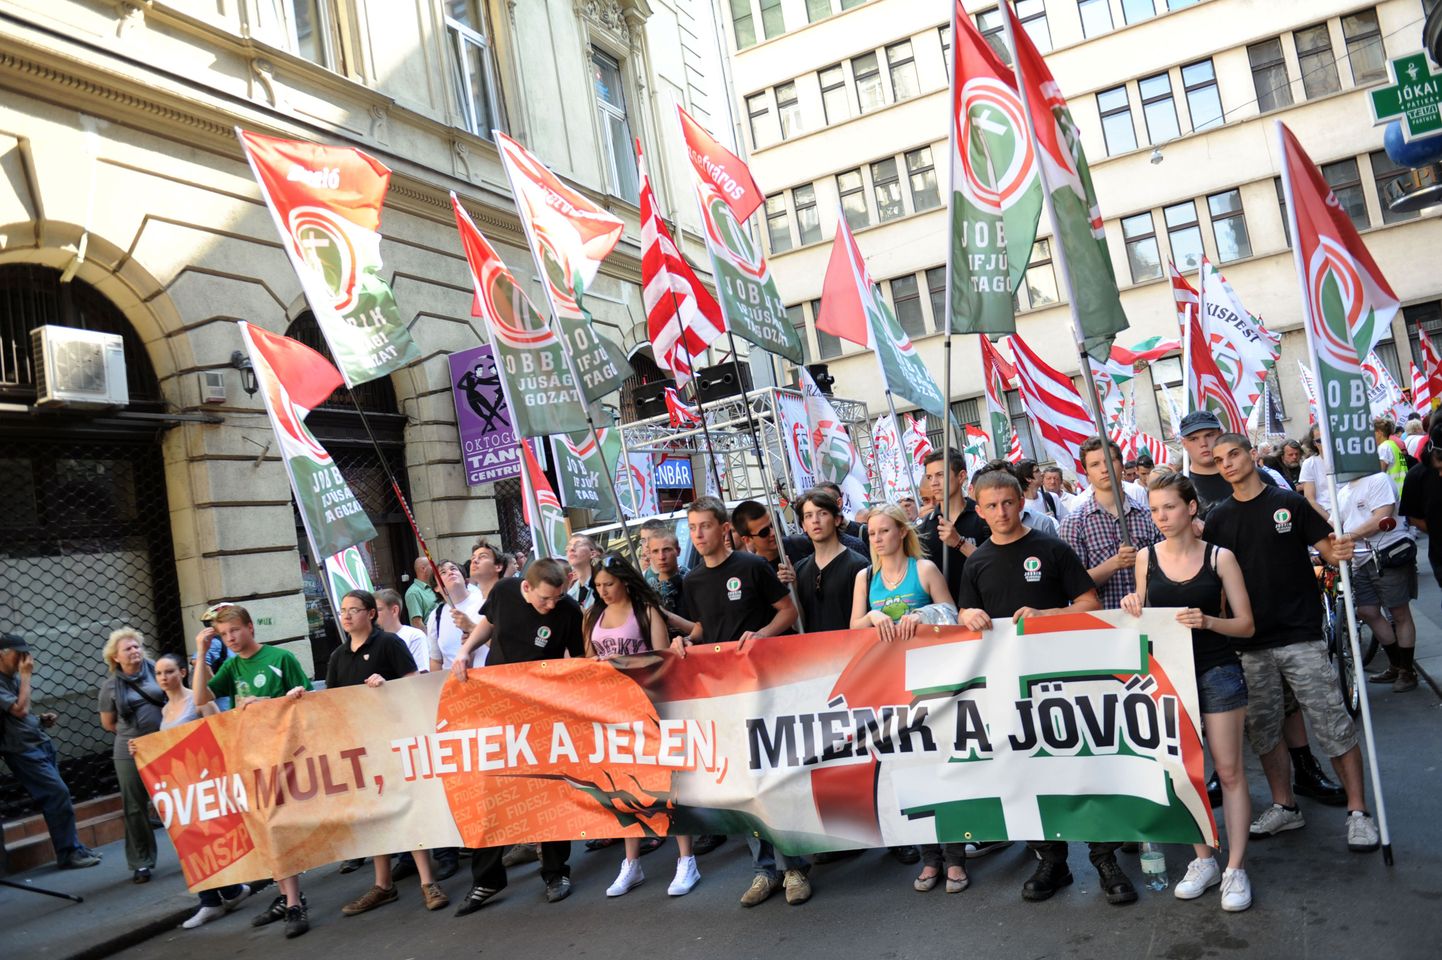 Jobbiki liikmed ja toetajad möödunud aastal valitsuse majanduspoliitika vastasel meeleavaldusel plakatiga "Minevik on nende, olevike on teie, tulevik on meie".